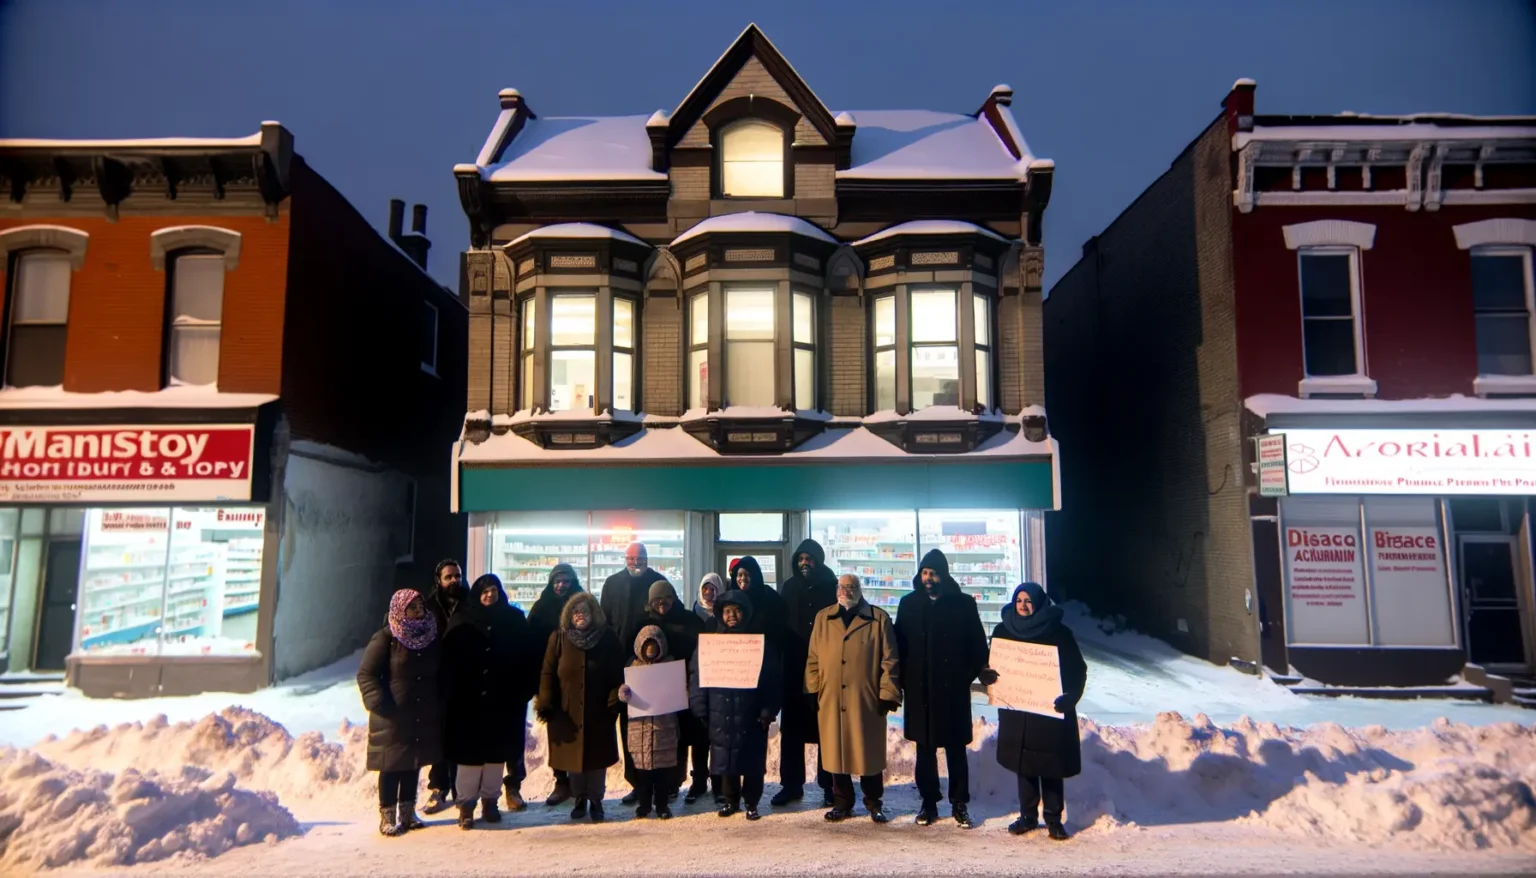 Eine Gruppe von Personen steht in winterlicher Kleidung vor einem zweistöckigen Gebäude und hält Schilder. Es scheint sehr kalt zu sein, da Schnee auf dem Bürgersteig und den Dächern der umliegenden Geschäfte liegt. Die Szene findet während der Dämmerung statt, was durch die Beleuchtung und den blauen Himmel im Hintergrund deutlich wird.